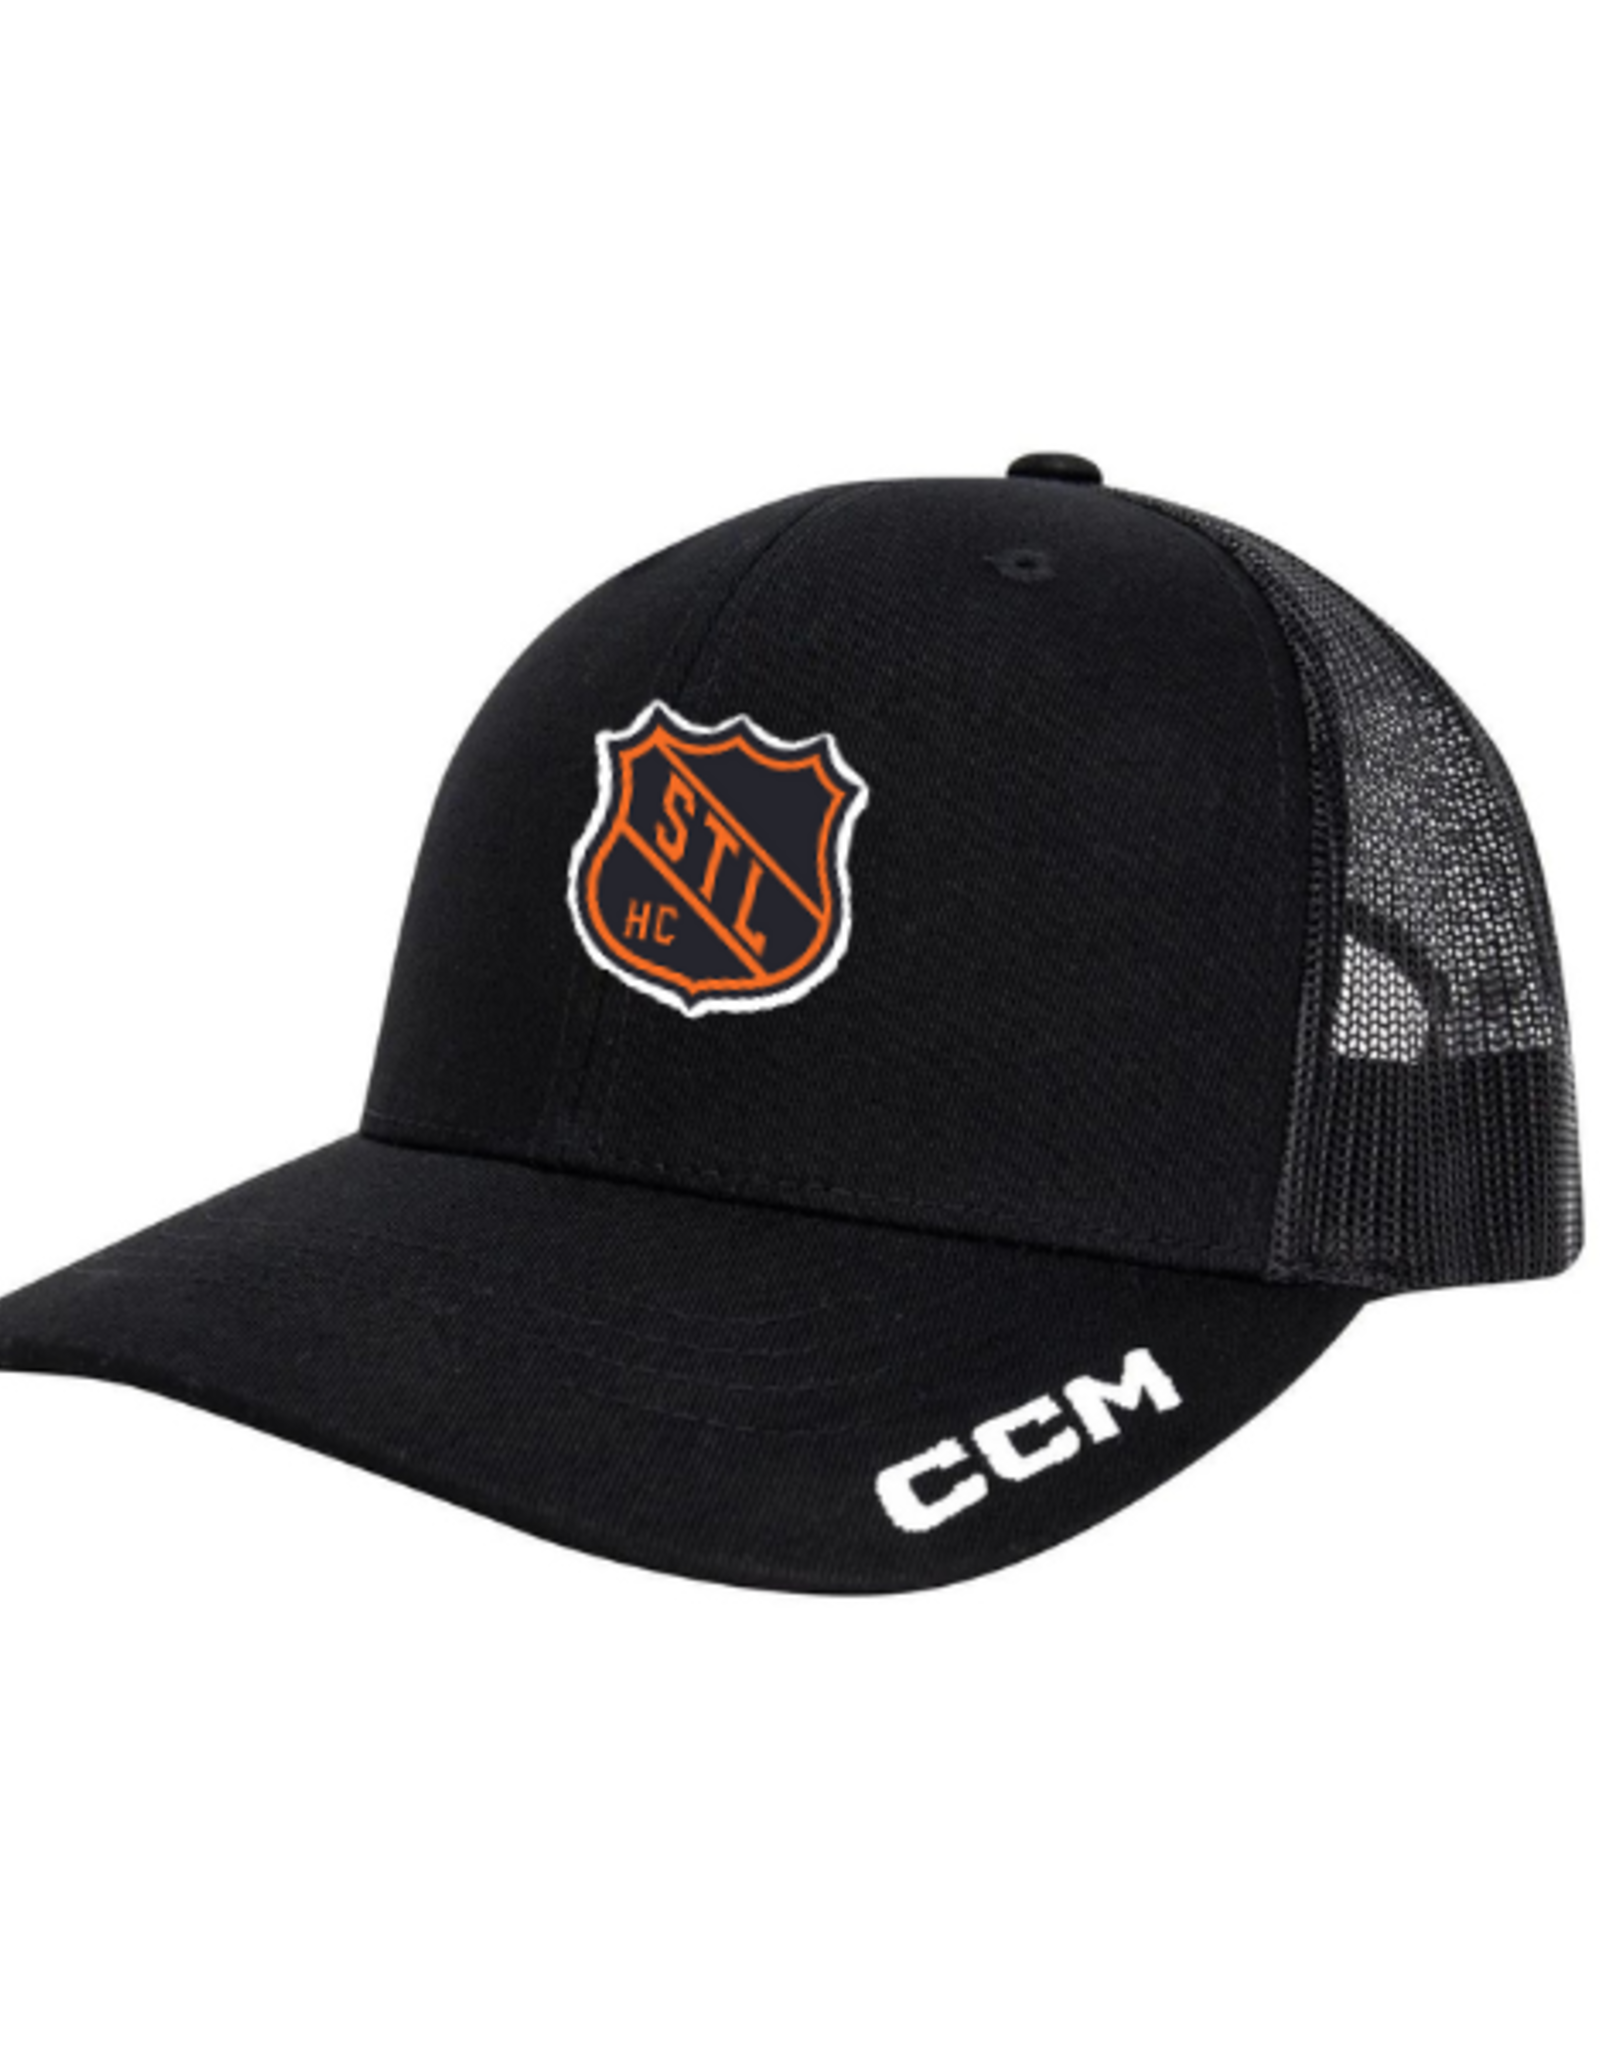 CCM Hockey Club CCM Trucker Hat (BLACK) YOUTH